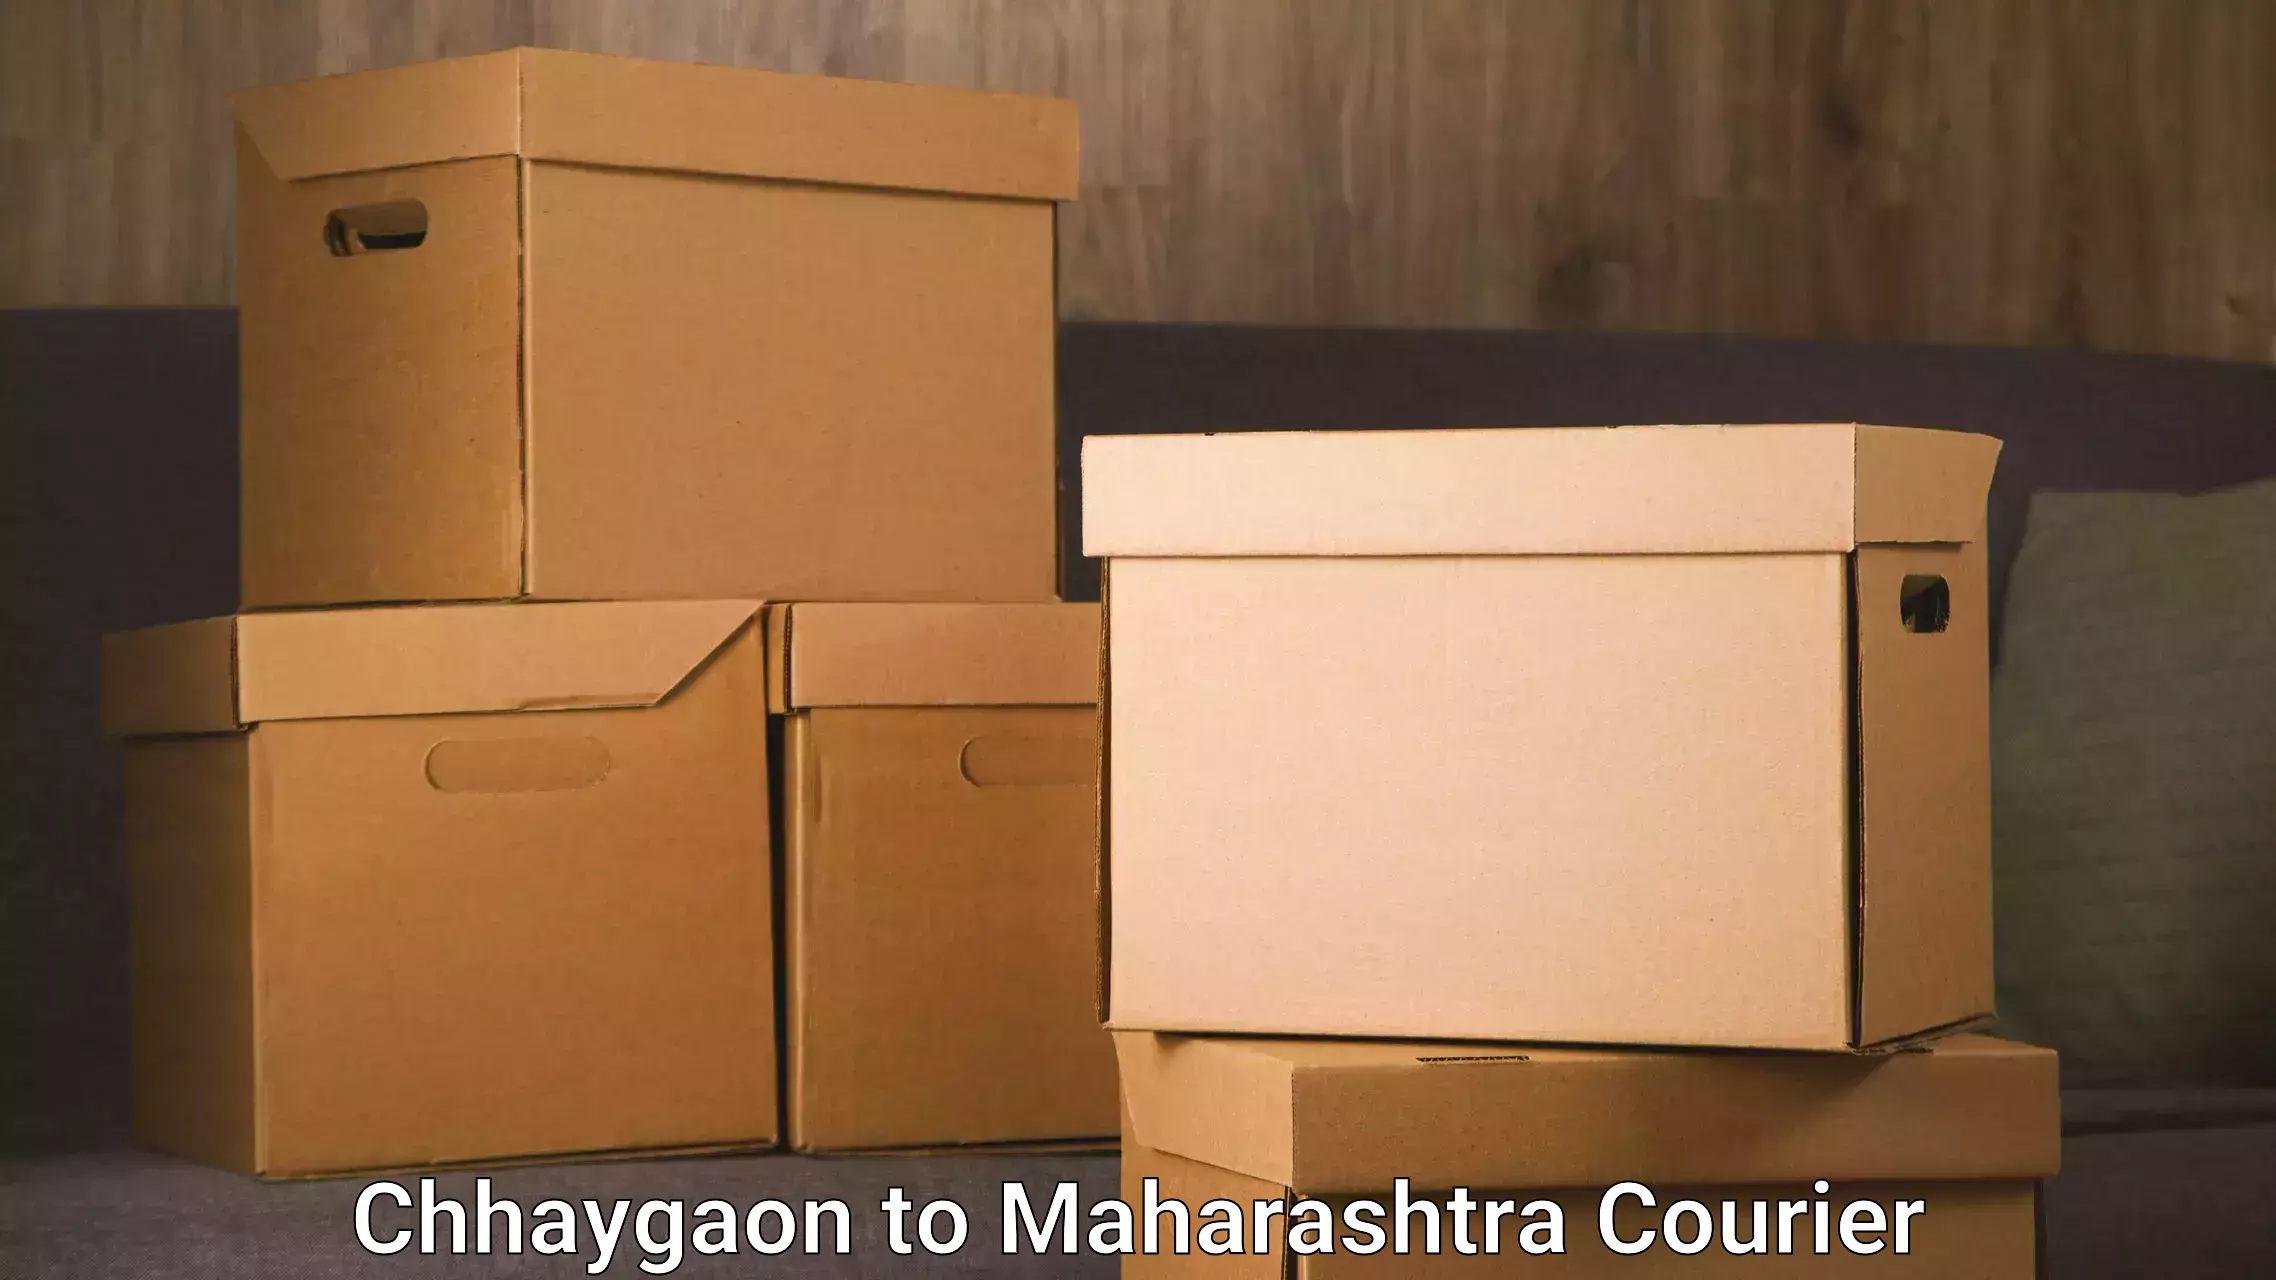 Digital courier platforms Chhaygaon to Homi Bhabha National Institute Mumbai